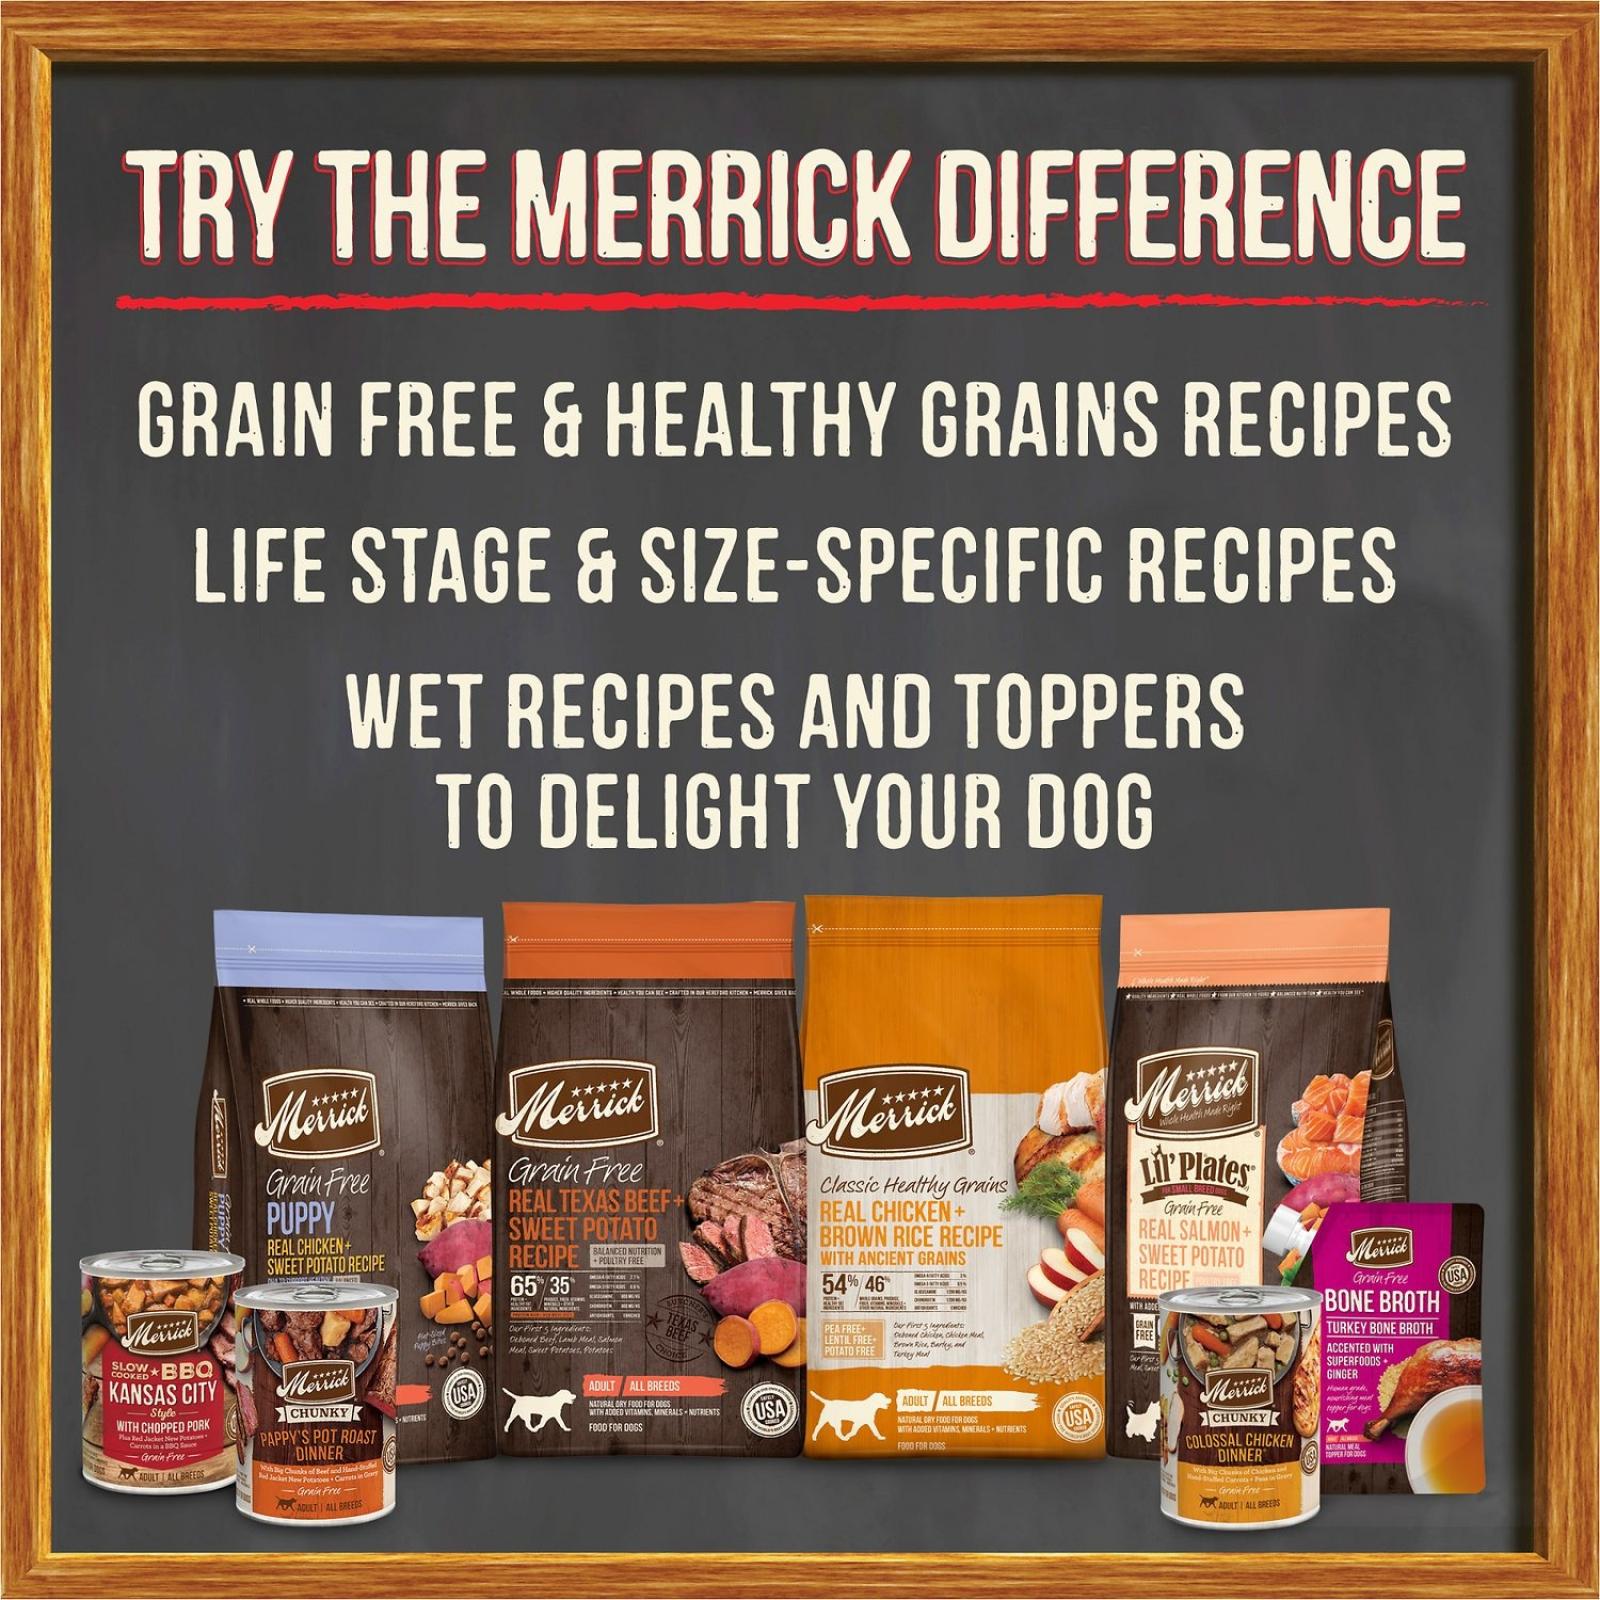 Merrick Grain Free Wingaling In Gravy Wet Dog Food